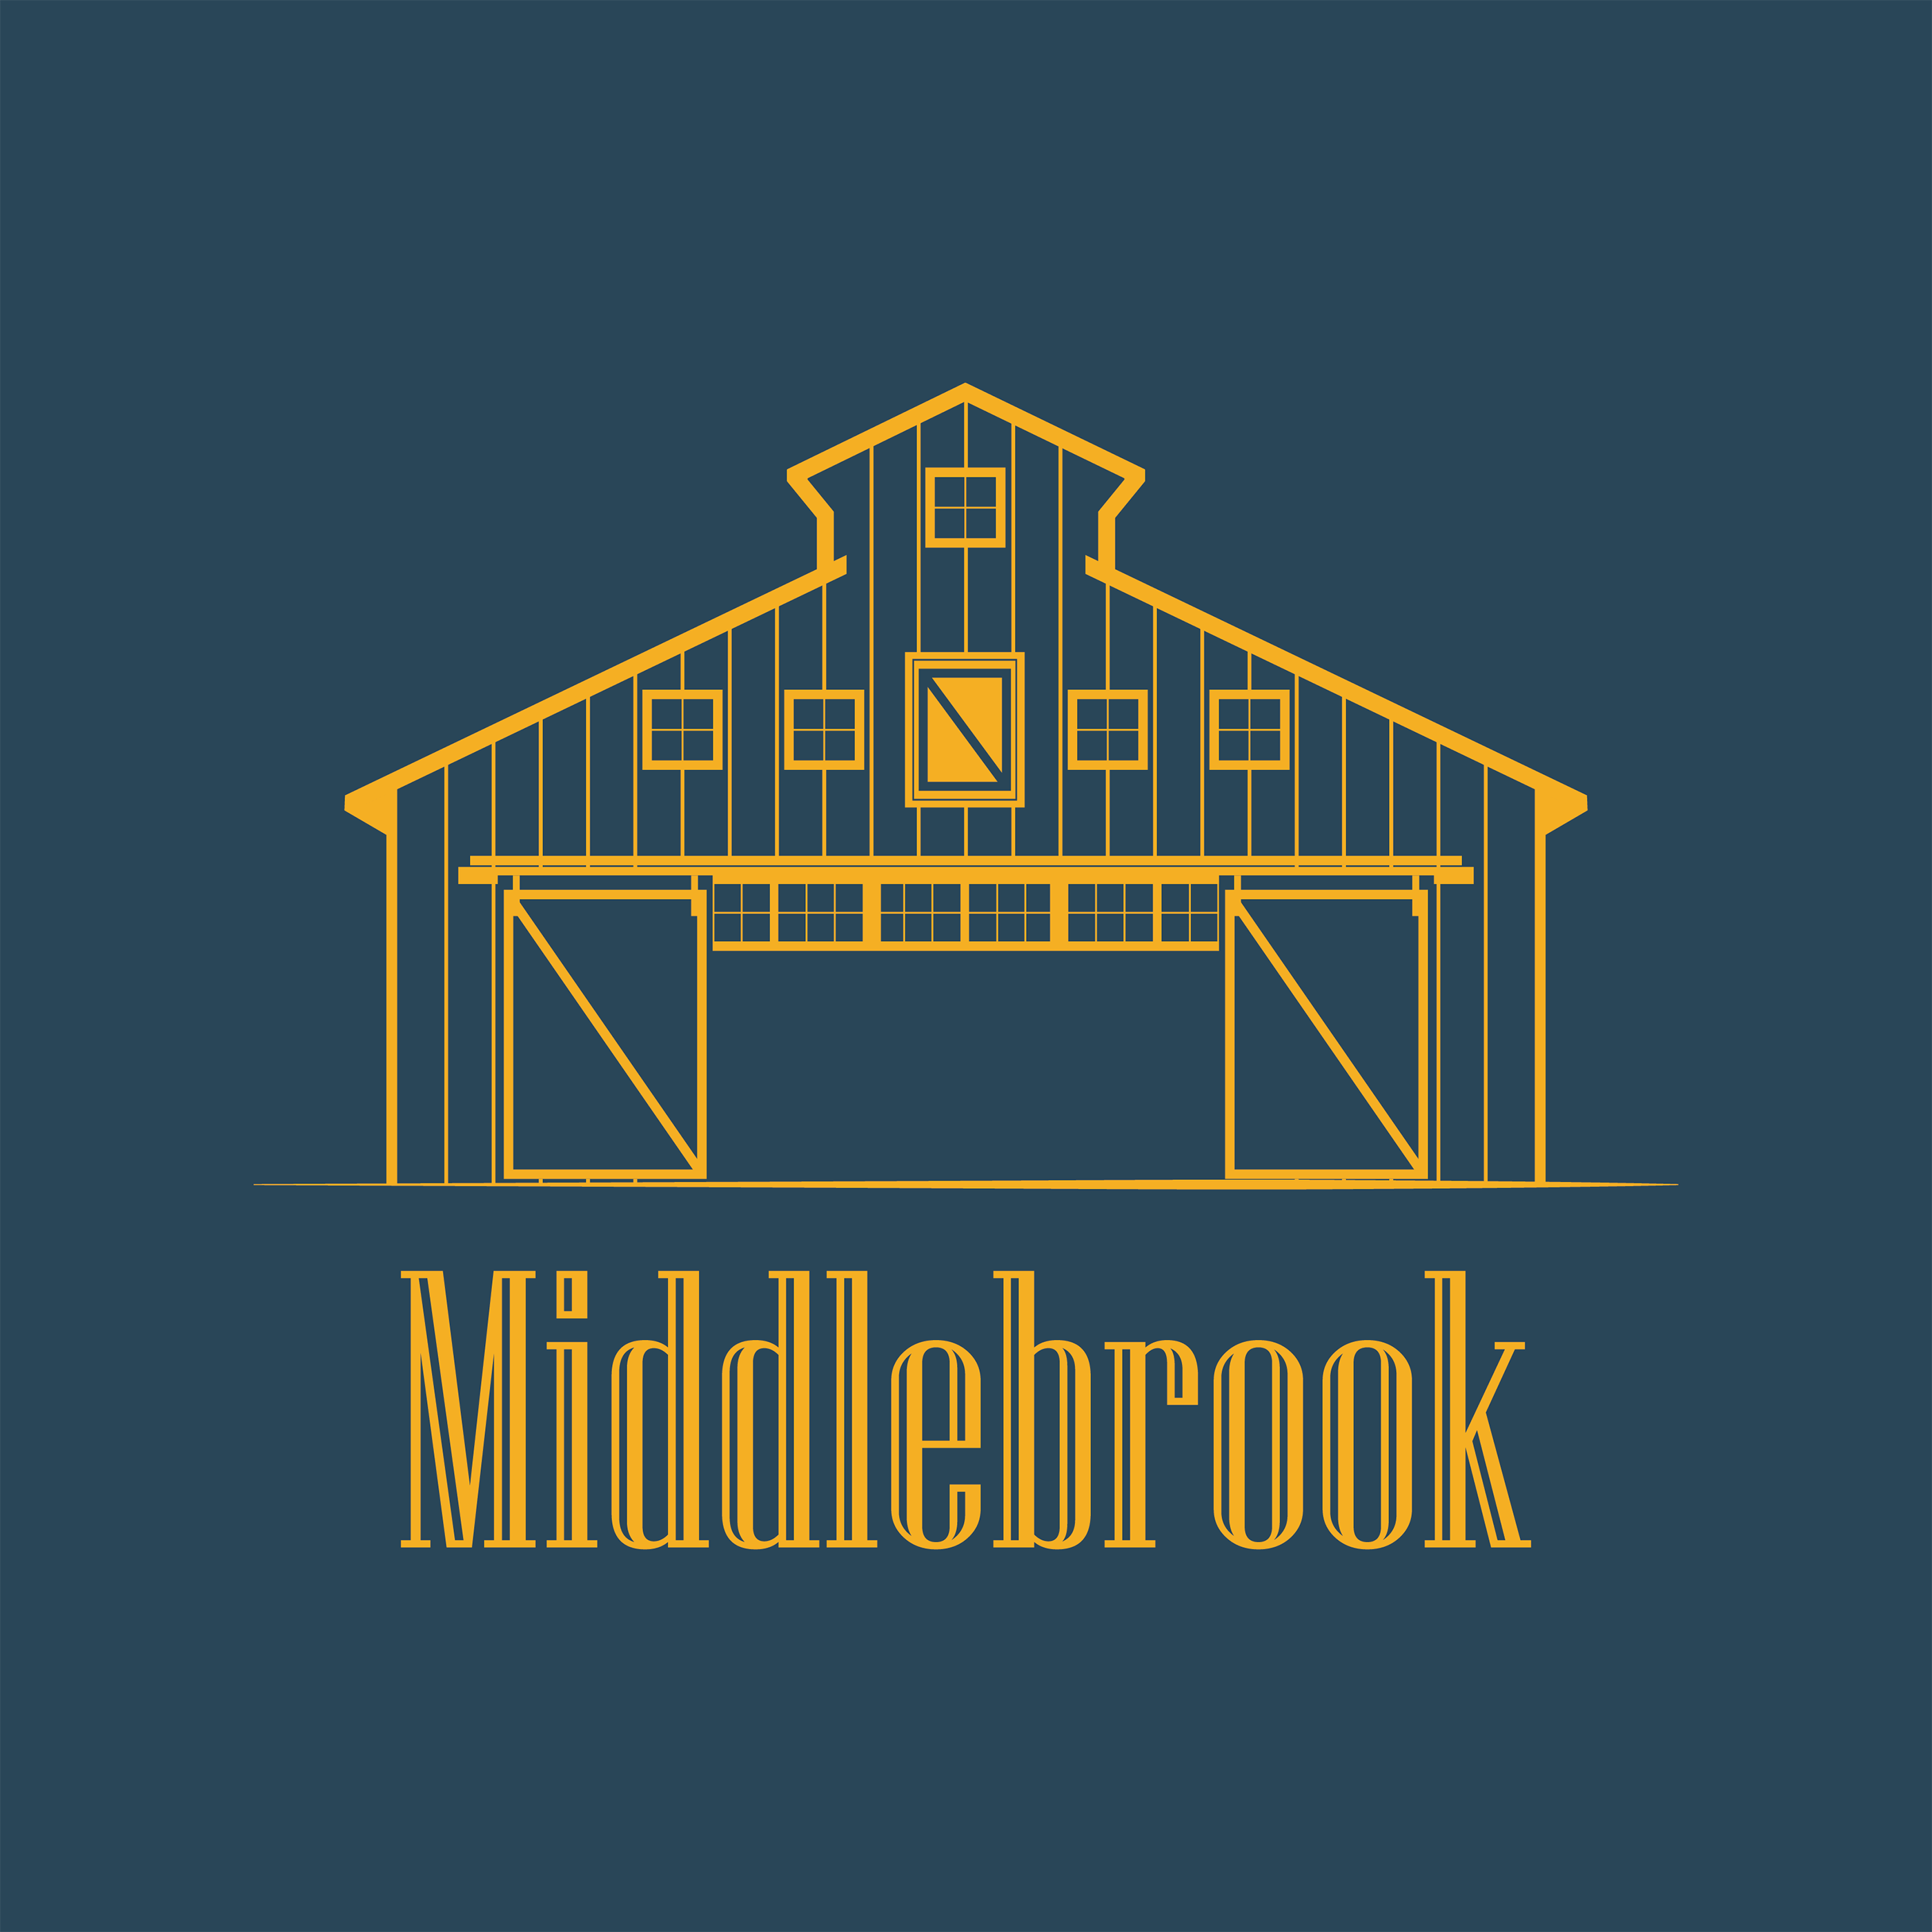 Middlebrook